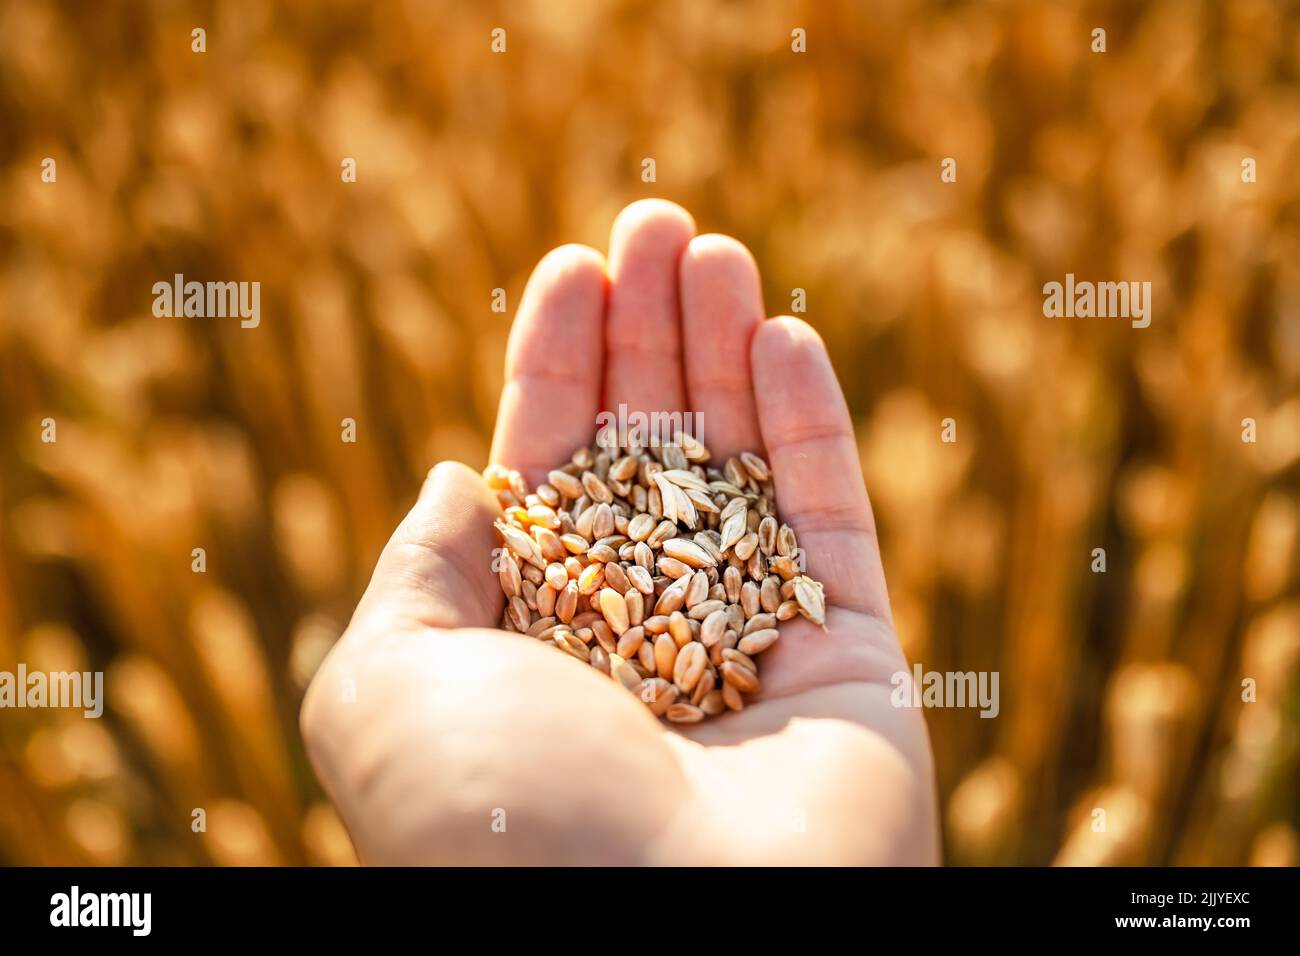 Reife Weizenkörner in agronomistischer Hand auf goldenem Feld, das durch das orangefarbene Abendlicht leuchtet. Industrie- und Naturhintergrund Stockfoto